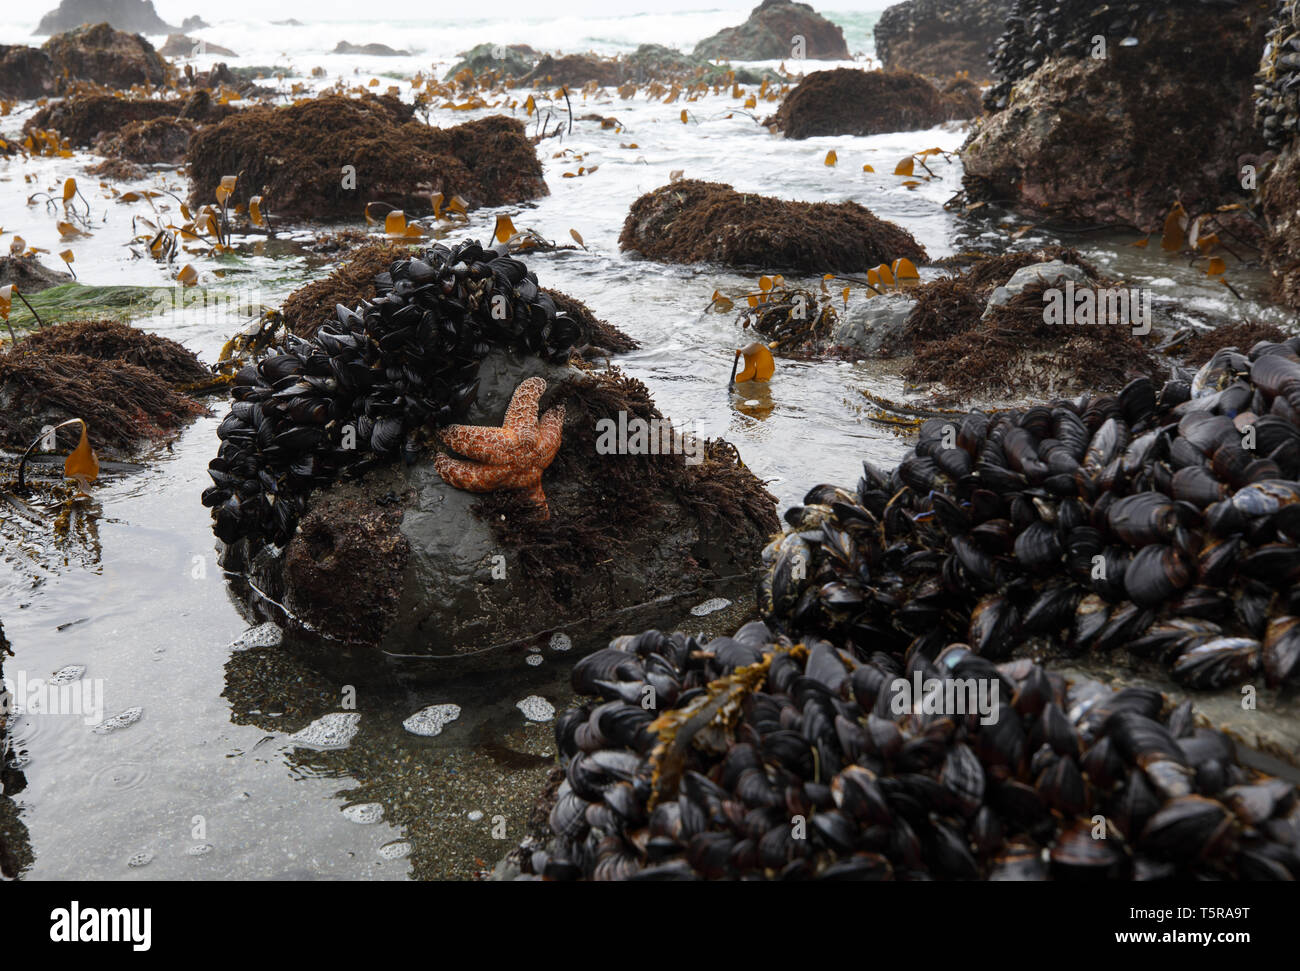 Un coussin d'étoiles de mer, les moules et les balanes sont révélé dans un bassin de marée à marée basse à Schoolhouse Beach en Californie Carmet, près de la ville de Bodega B Banque D'Images